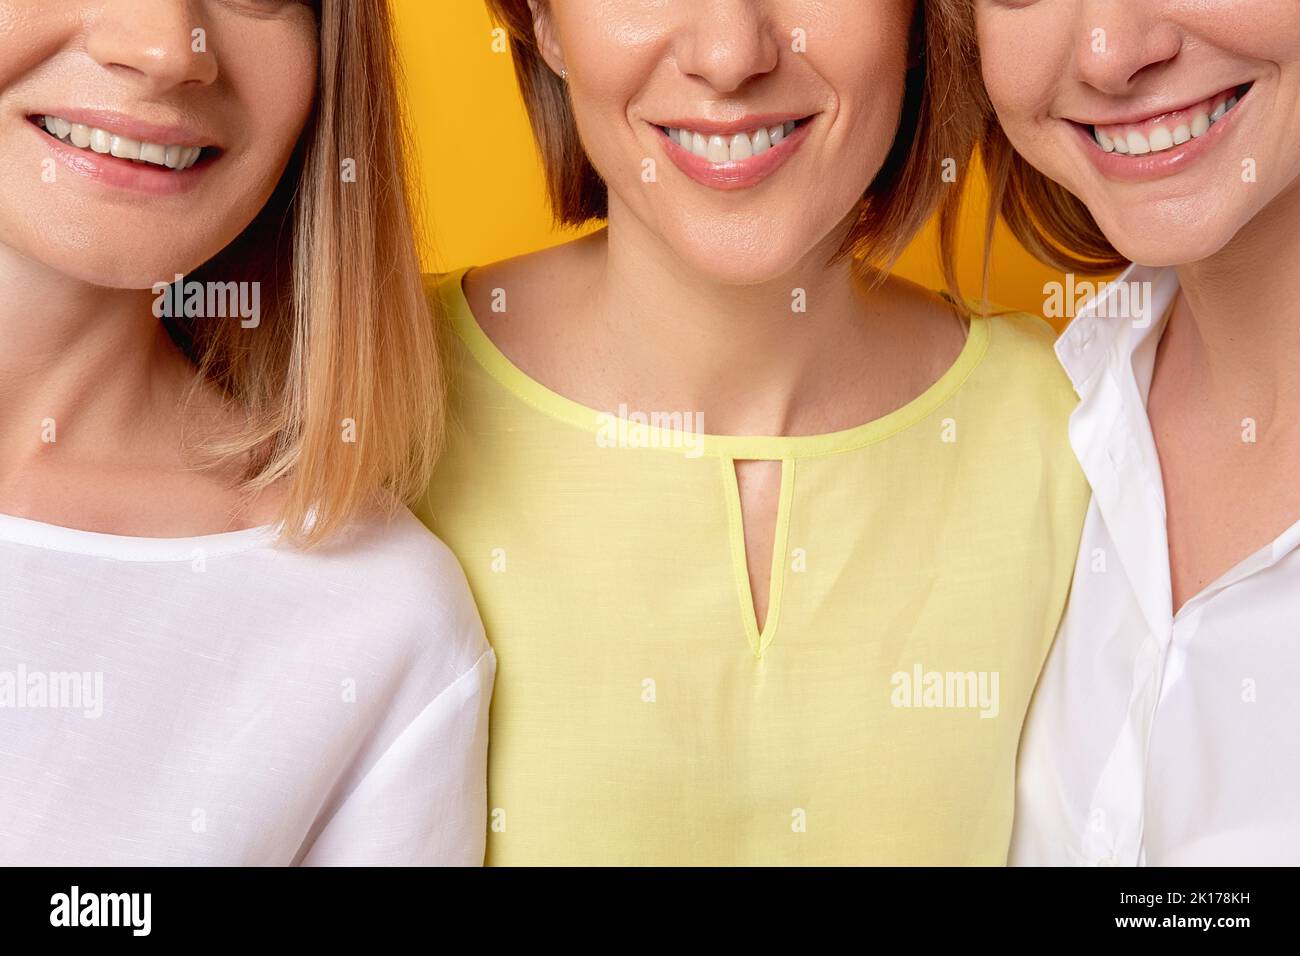 Sorriso toothy. Salute dentale. Bellezza femminile benessere. Ritratto corto di tre donne positive felici soddisfatte in blusa bianca gialla insieme sorridente Foto Stock